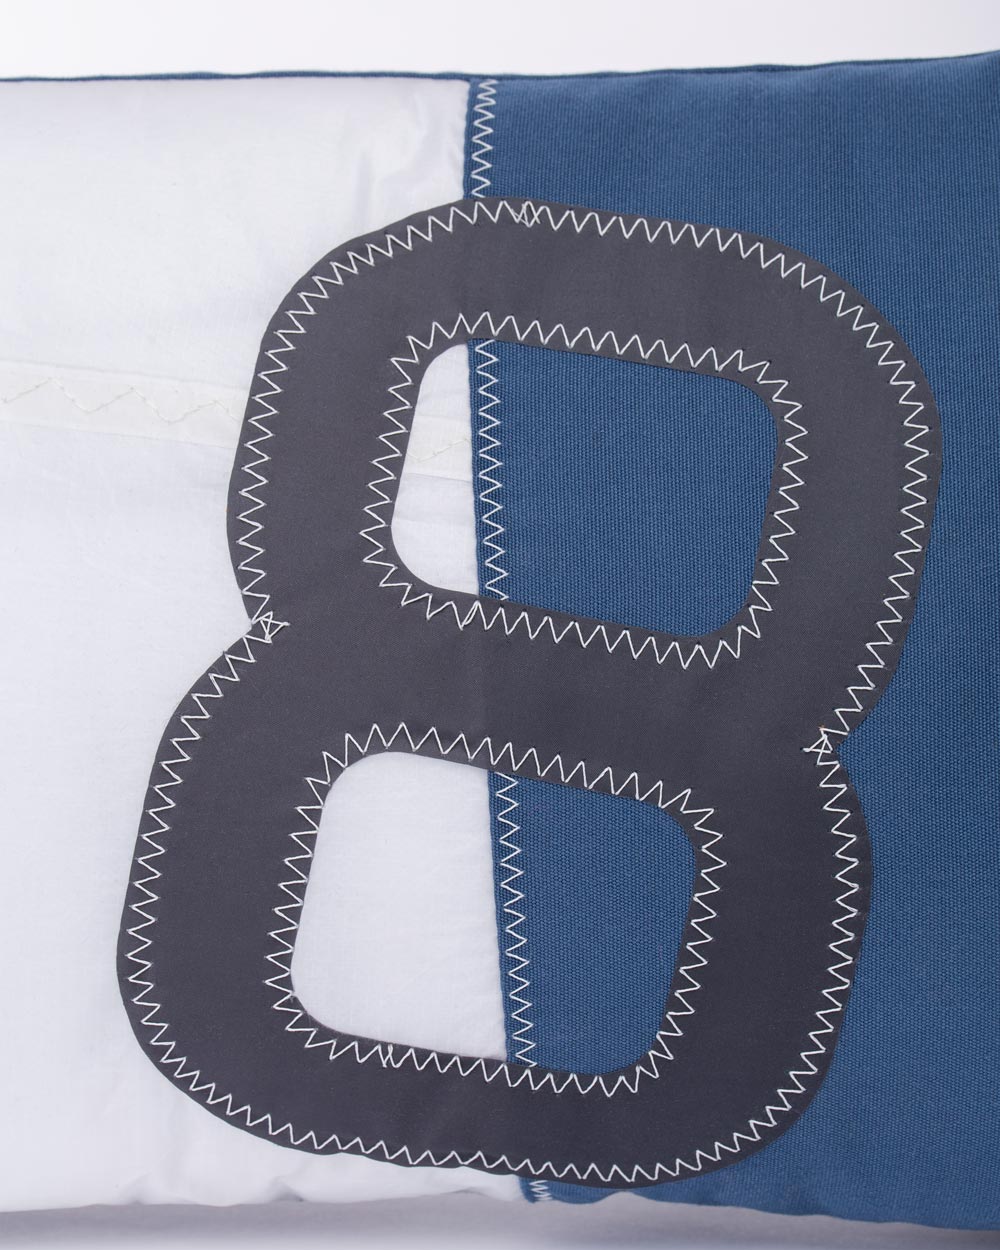 Sofakissen 30 x 50 cm by 727 Sailbags / Segeltuch weiß blau / Motiv 8 schwarz